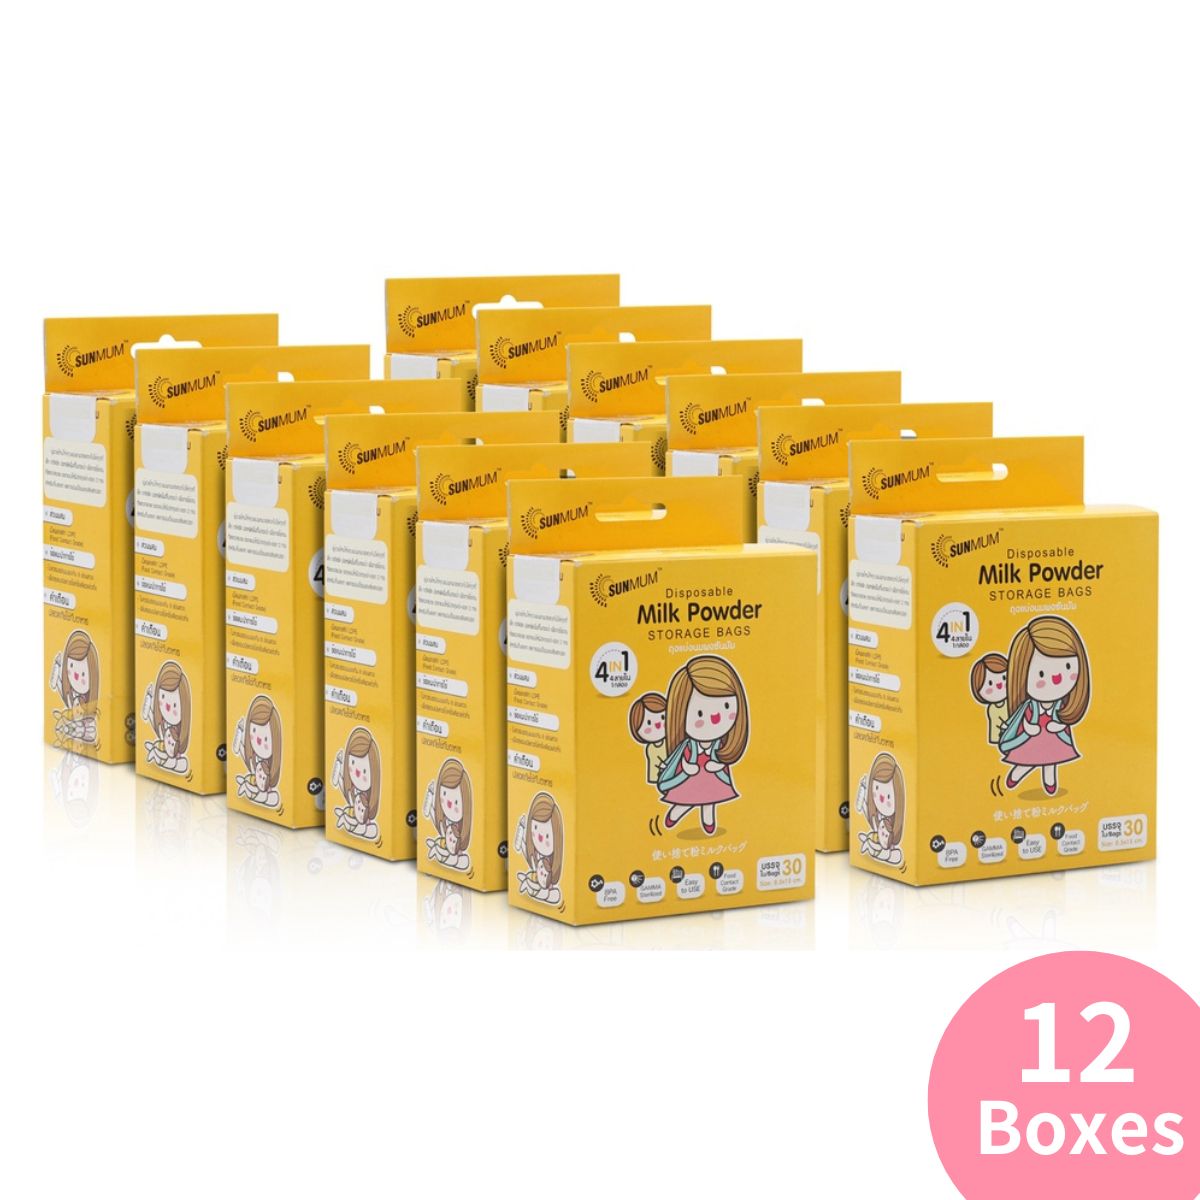 12 Boxes (1 Carton)